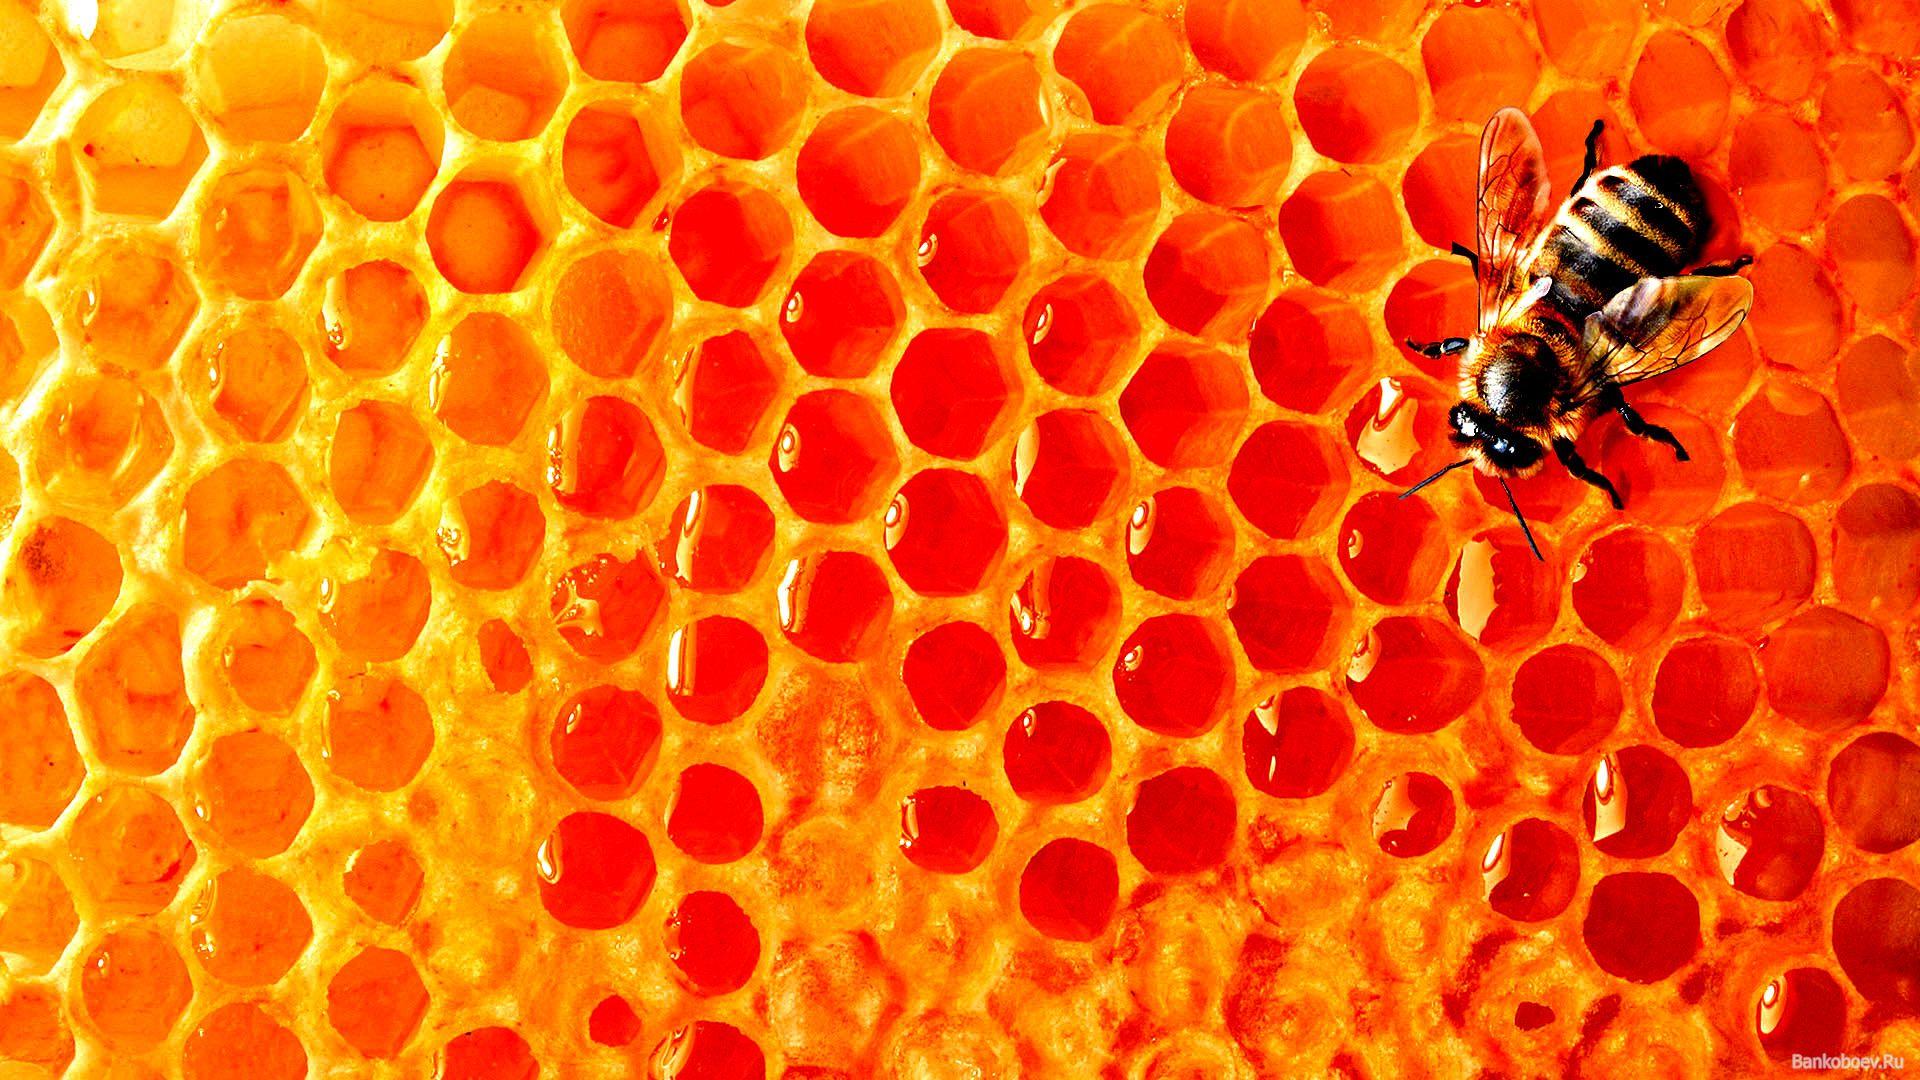 Download wallpaper: bee, Honey, honey honeycomb, download photo